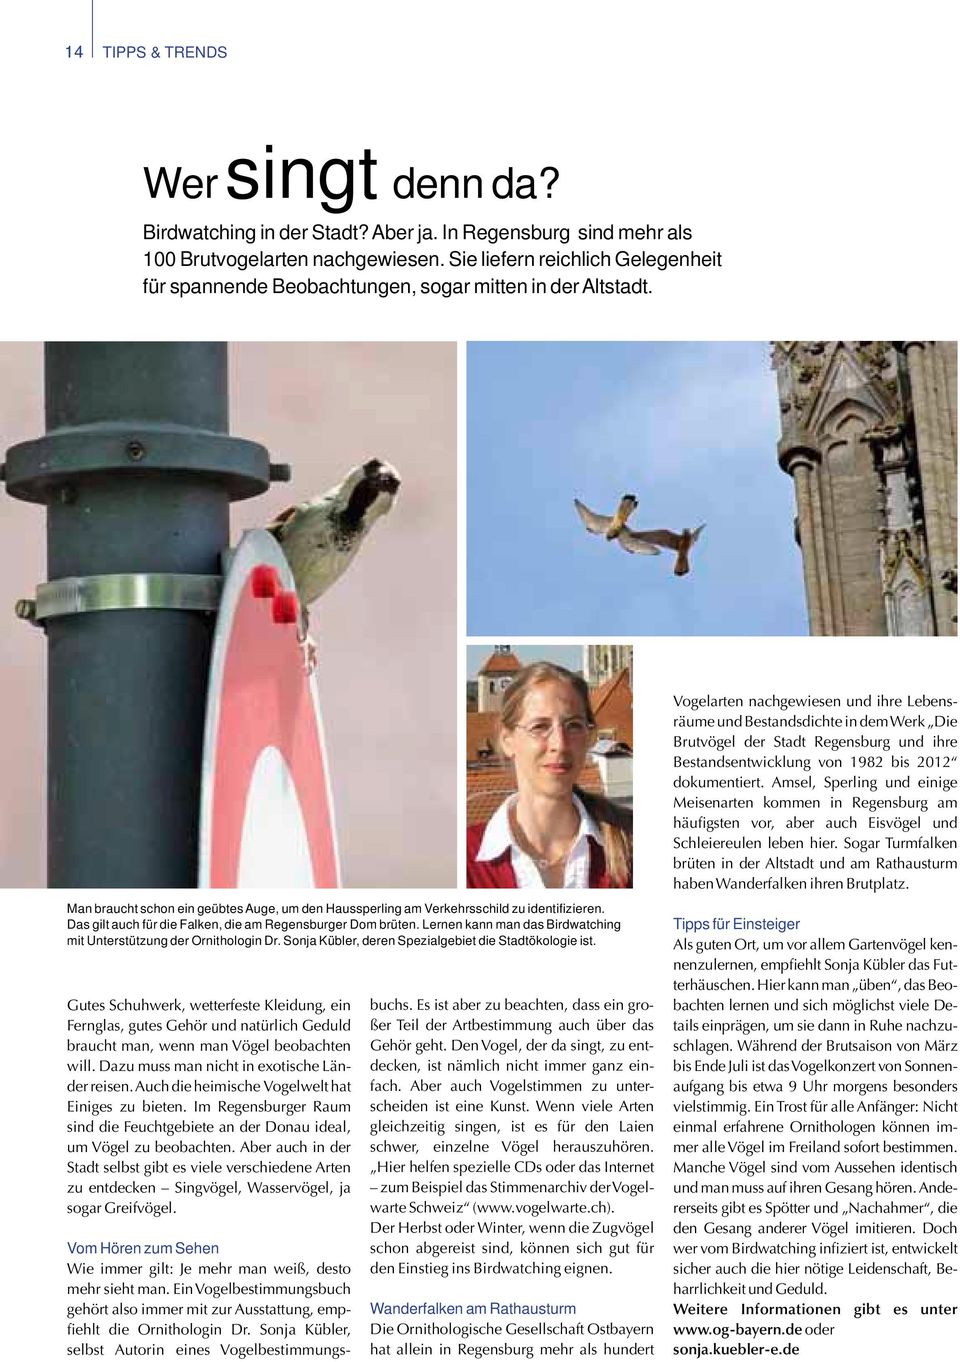 Das gilt auch für die Falken, die am Regensburger Dom brüten. Lernen kann man das Birdwatching mit Unterstützung der Ornithologin Dr. Sonja Kübler, deren Spezialgebiet die Stadtökologie ist.